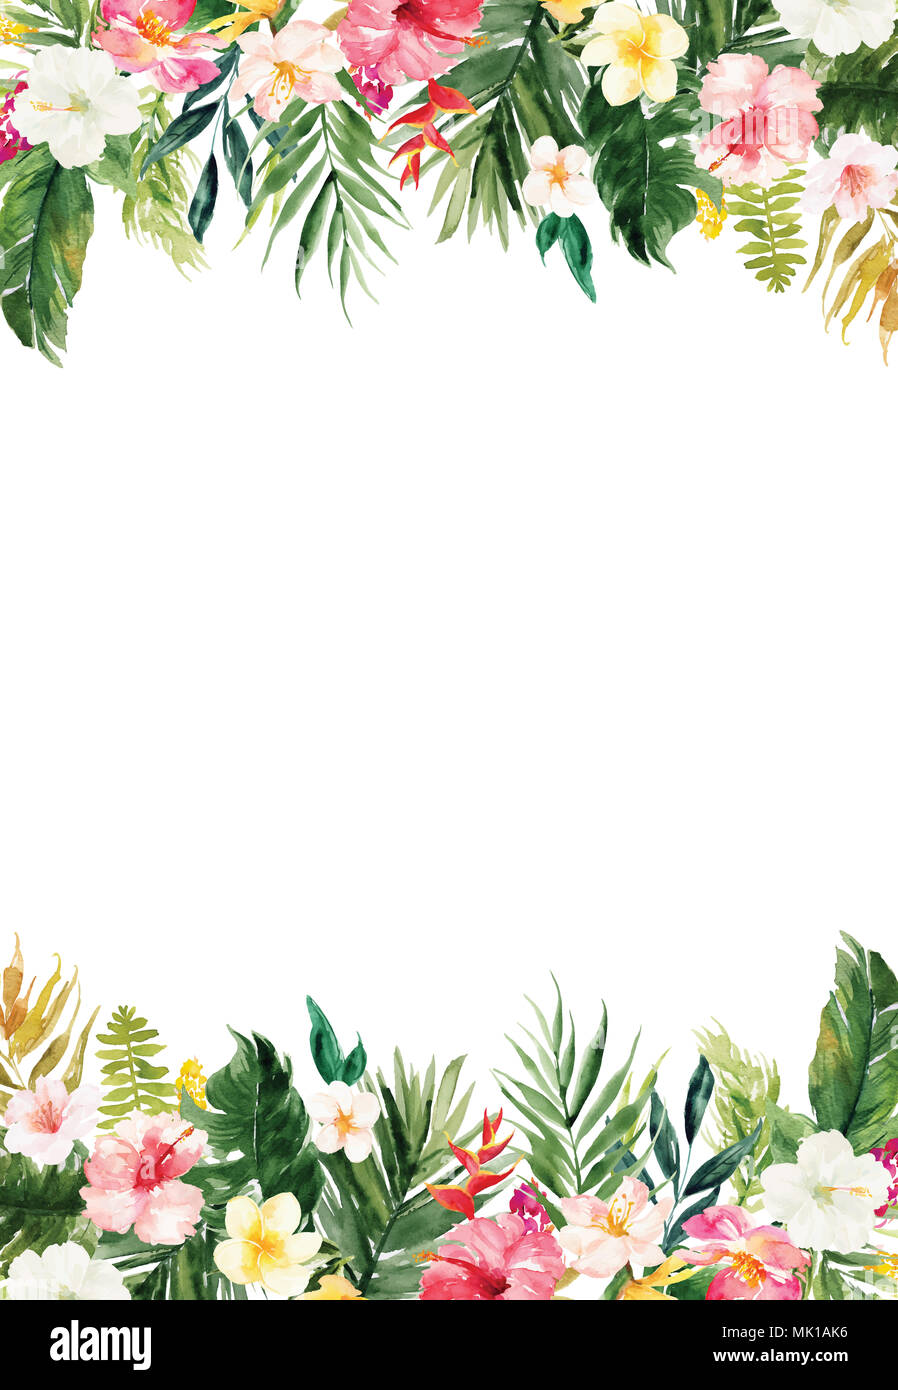 Le papier blanc vide vertical arrière-plan avec des plantes colorées et de fleurs border Banque D'Images